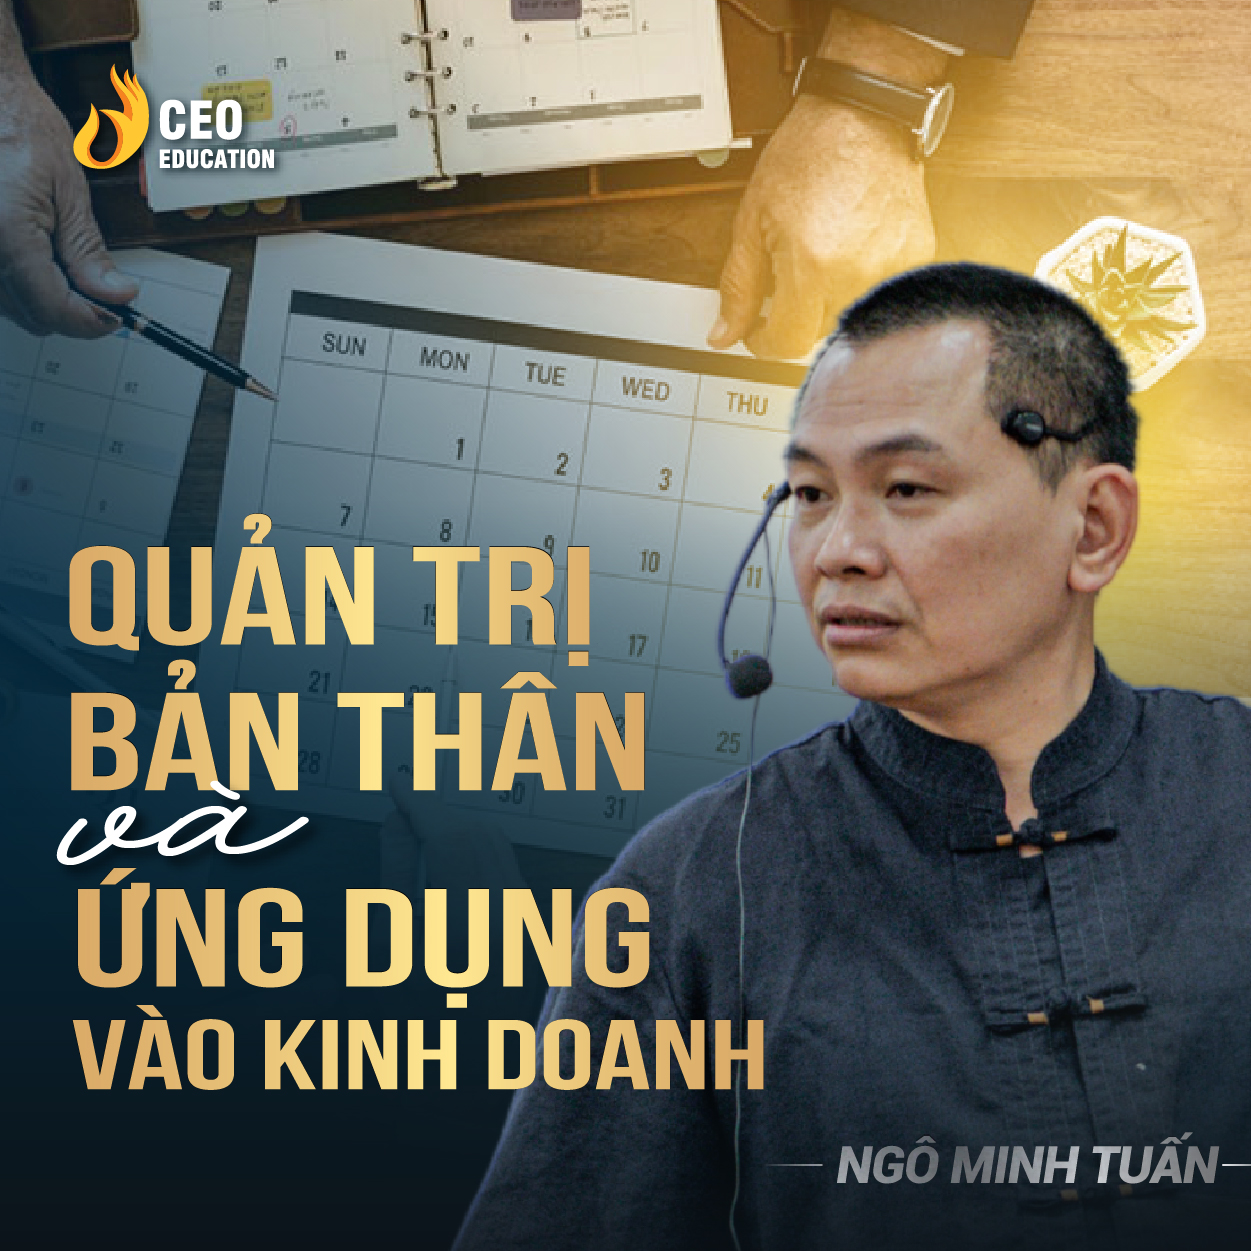 Nghệ thuậ Quản trị bản thân và ứng dụng vào kinh doanh| Ngô Minh Tuấn | Học Viện CEO Việt Nam